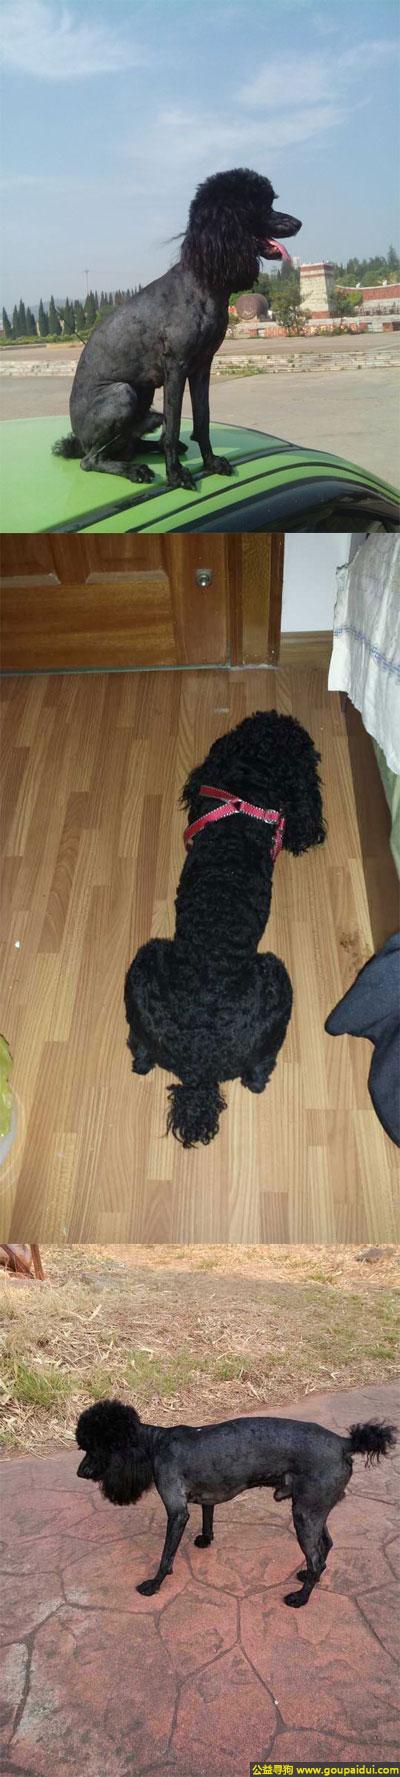 捡到泰迪，南省楚雄市寻狗太阳历大道走失1岁半雄性黑色泰迪体重7公斤，它是一只非常可爱的宠物狗狗，希望它早日回家，不要变成流浪狗。